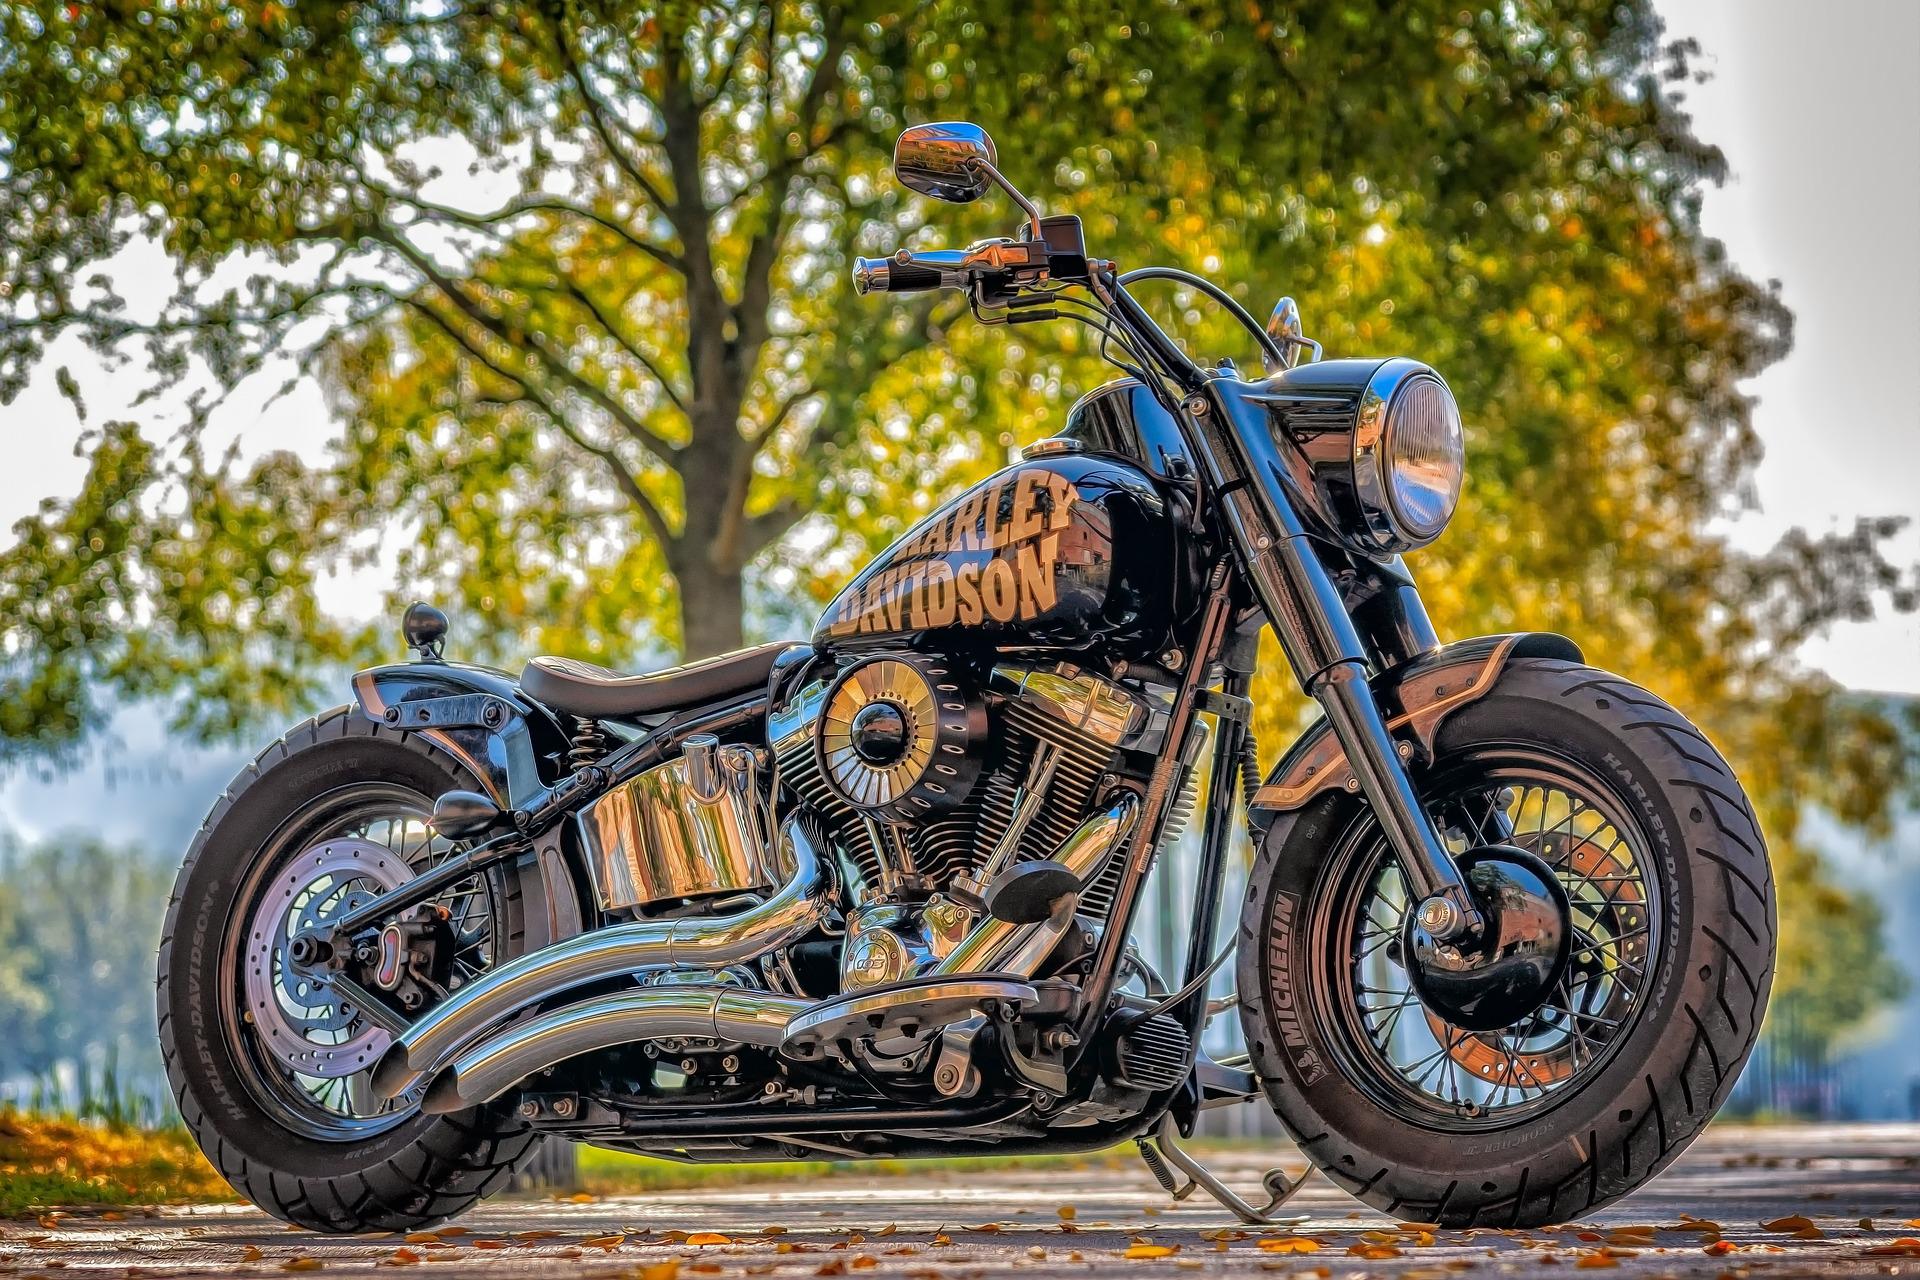 Polizei sucht Zeugen nach Diebstahl eines Harley-Davidson-Motorrades